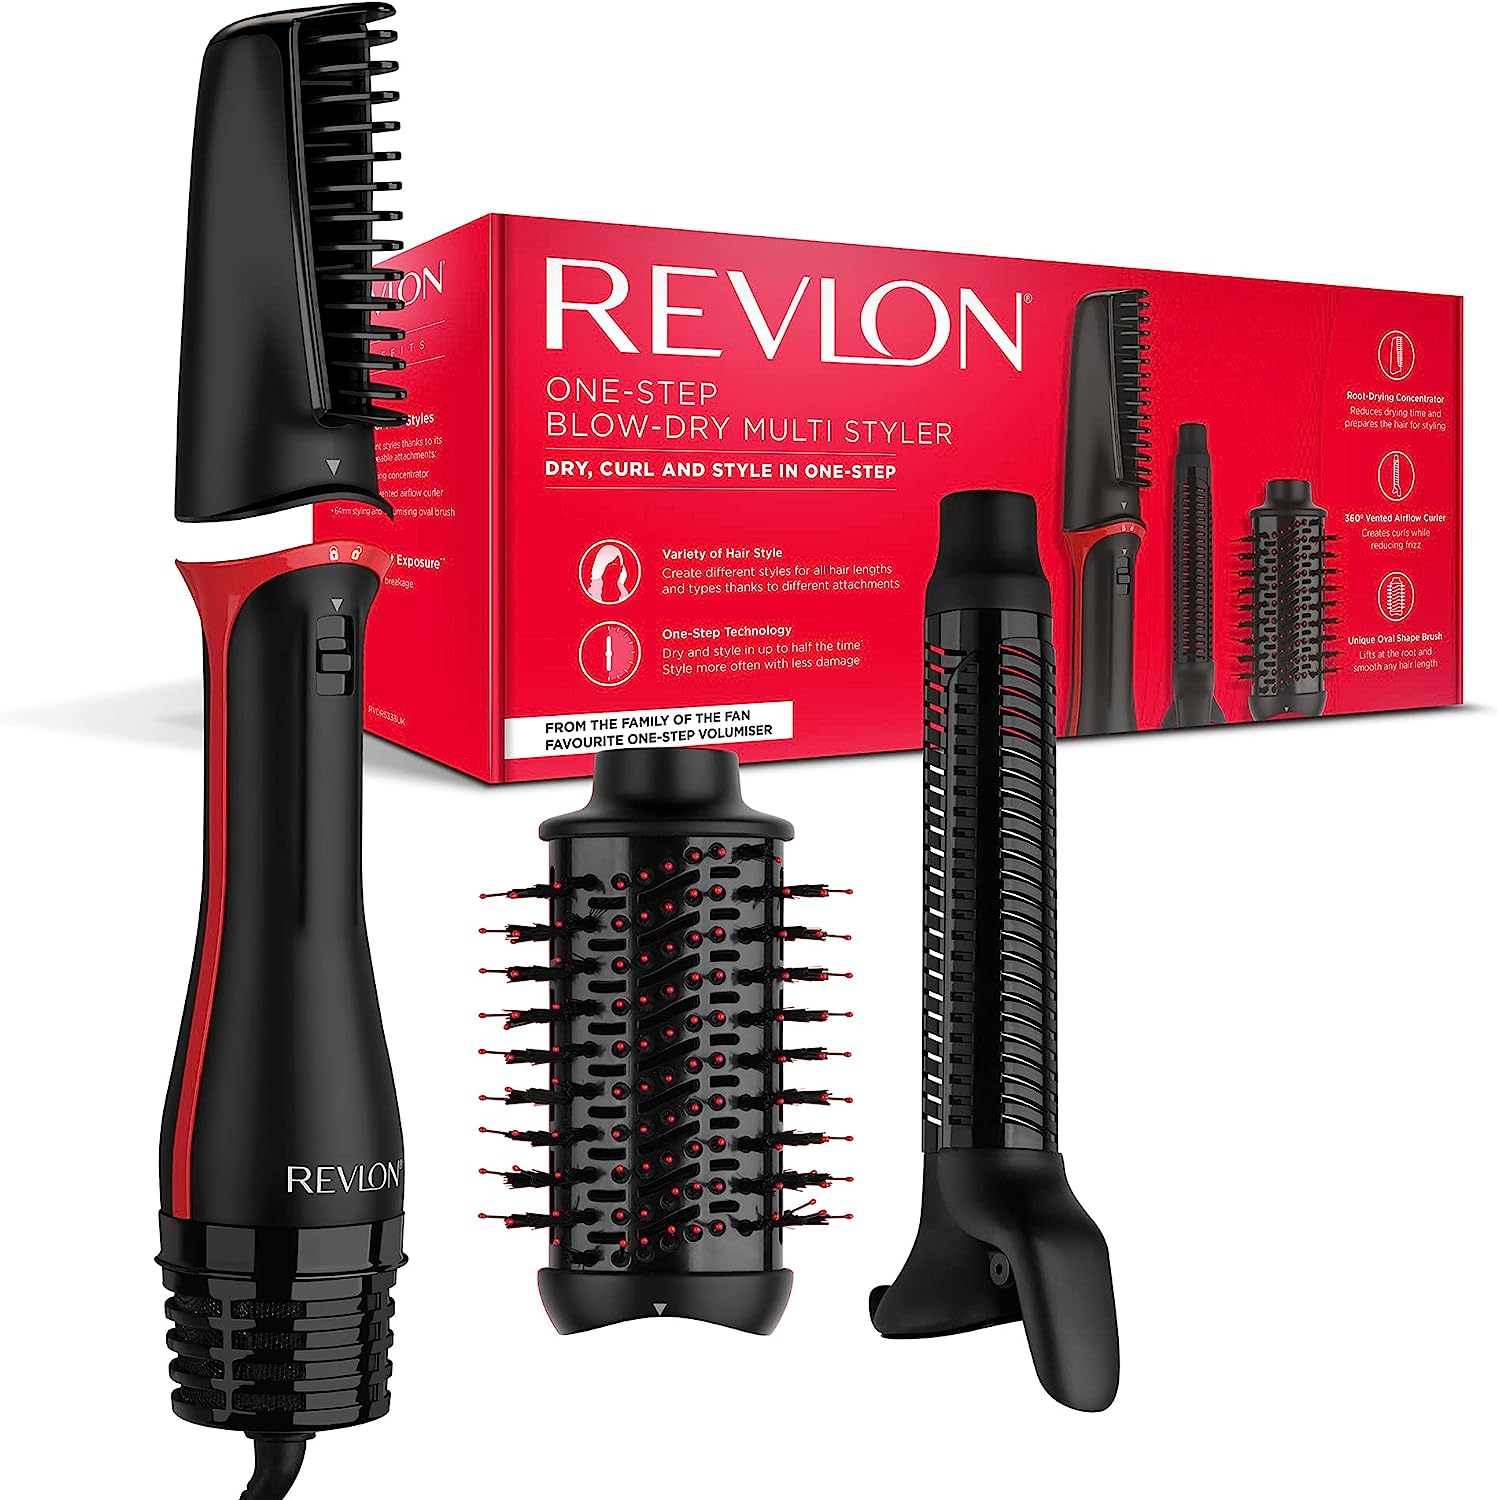 Revlon One-Step Hair Dryer & Multi-Styler-3-in-1 tool-(Removable Head, Curling Iron, Hair Dryer, Styler) RVDR5333